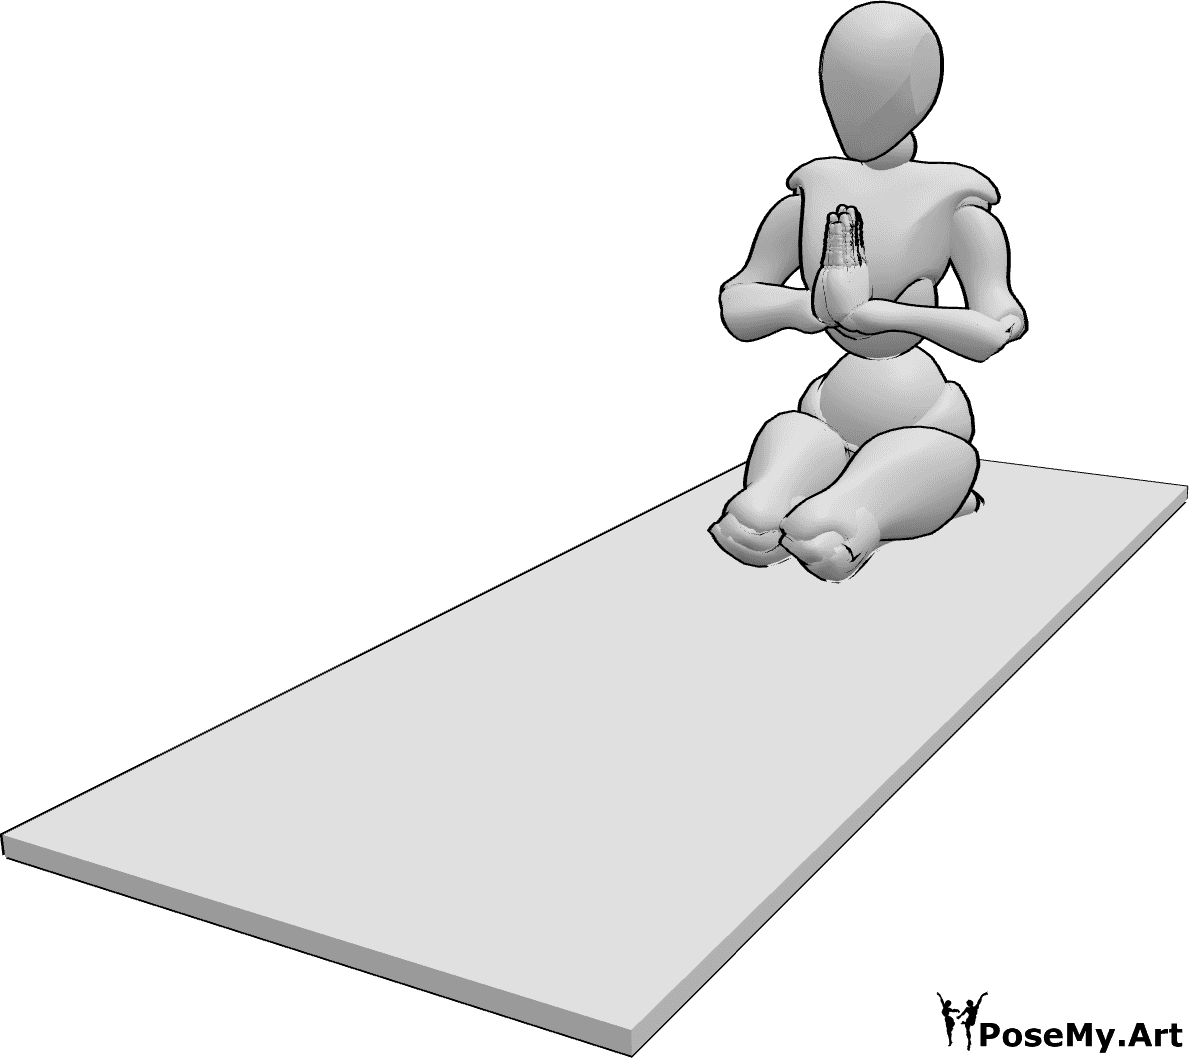 Referencia de poses- Postura de yoga femenina - Mujer haciendo una postura de yoga